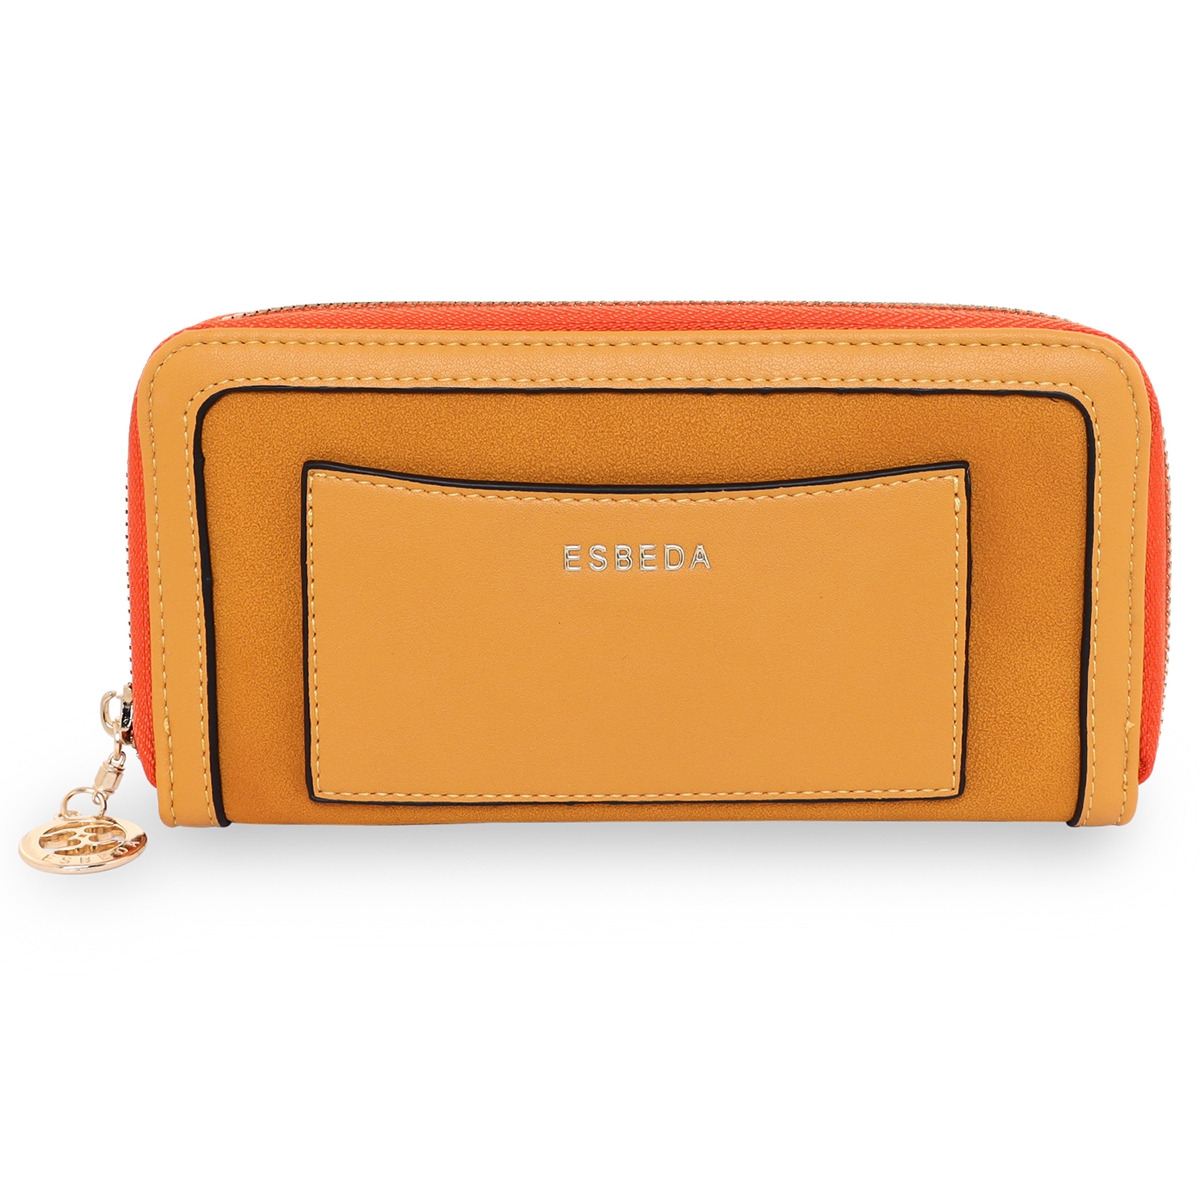 ESBEDA | ESBEDA Mustard Color Soft Suede Wallet For Women's- Large